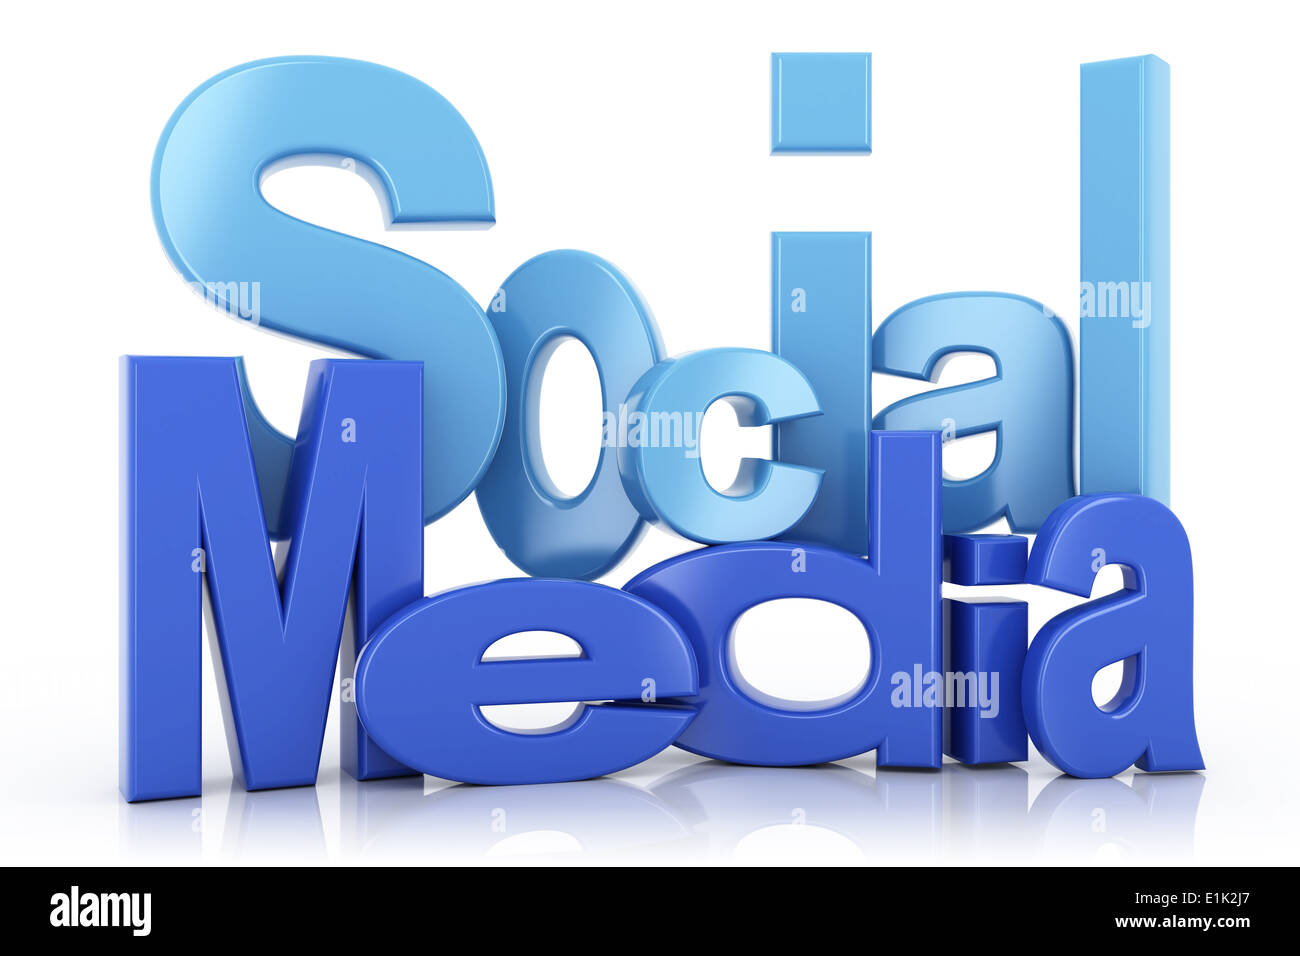 Social media text Stock Photo